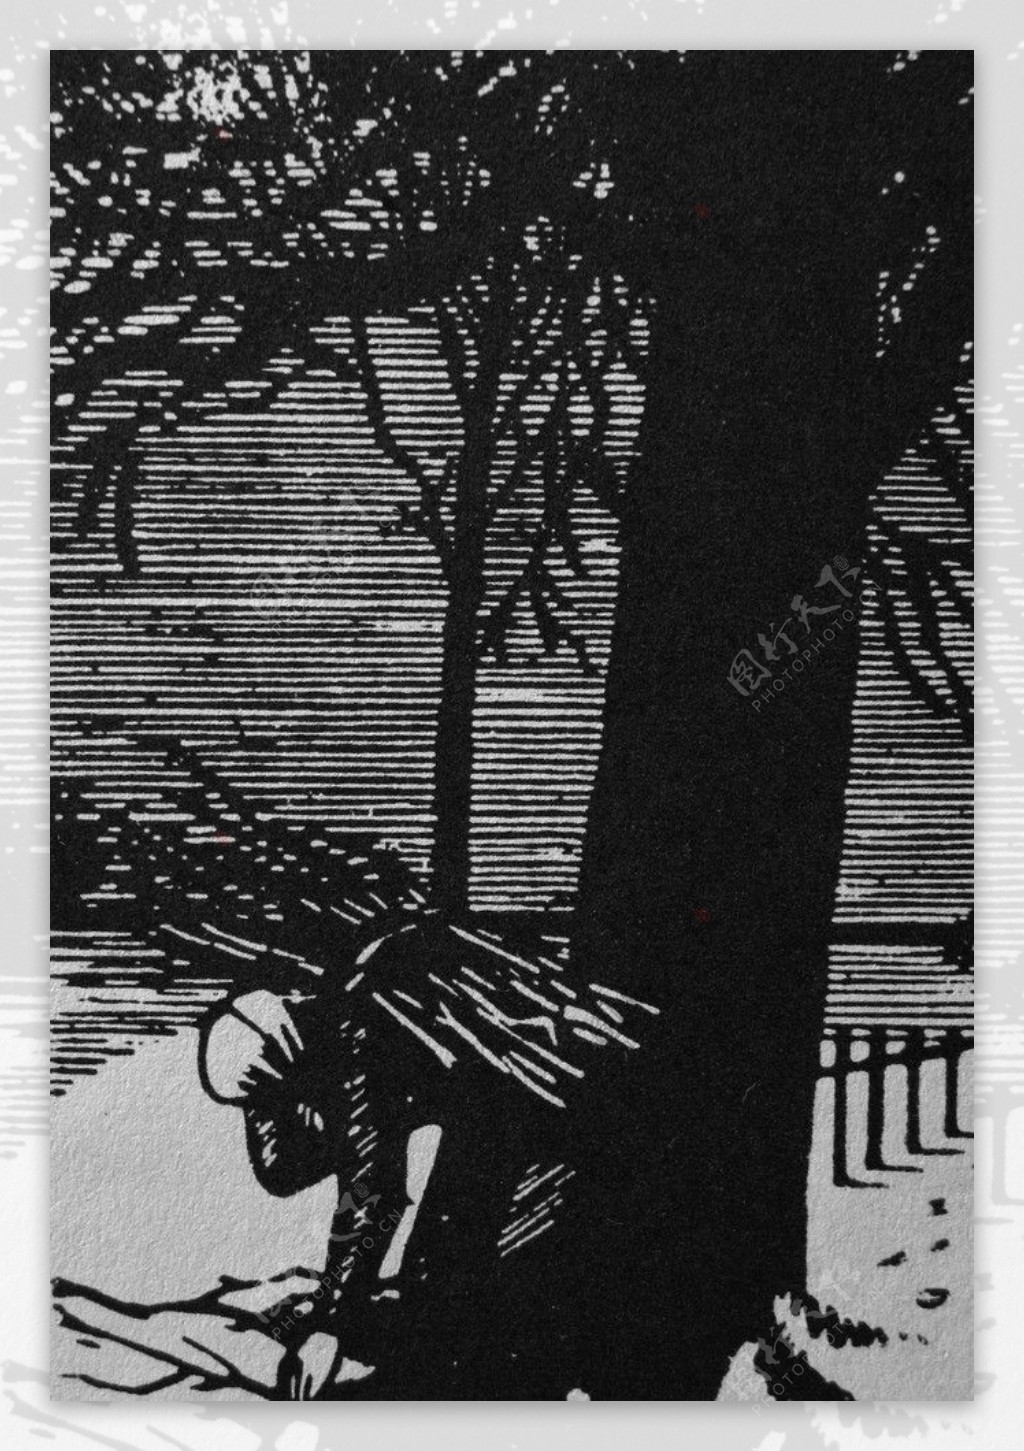 埃米勒183维尔哈伦十五首长诗插图木刻版画图片